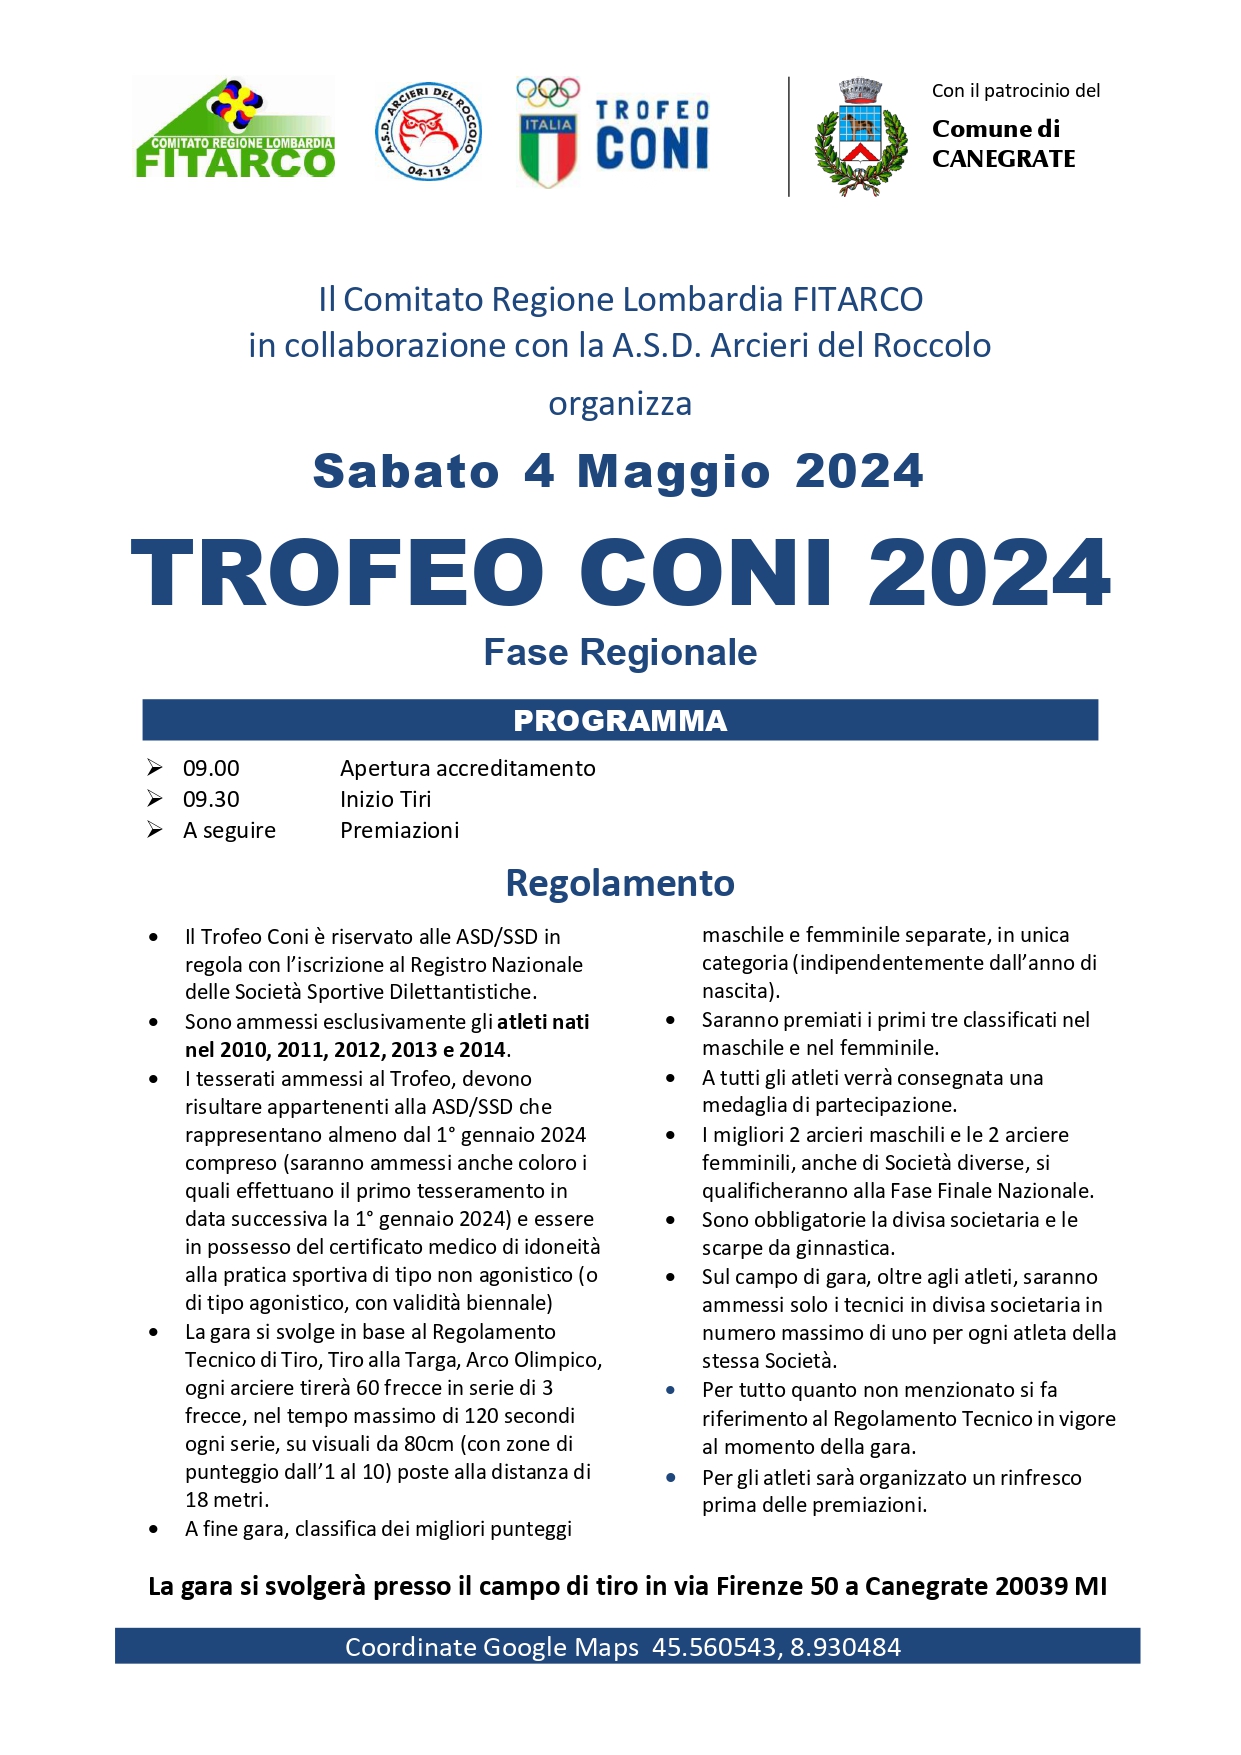 Trofeo CONI 2024 – Fase Regionale Lombardia